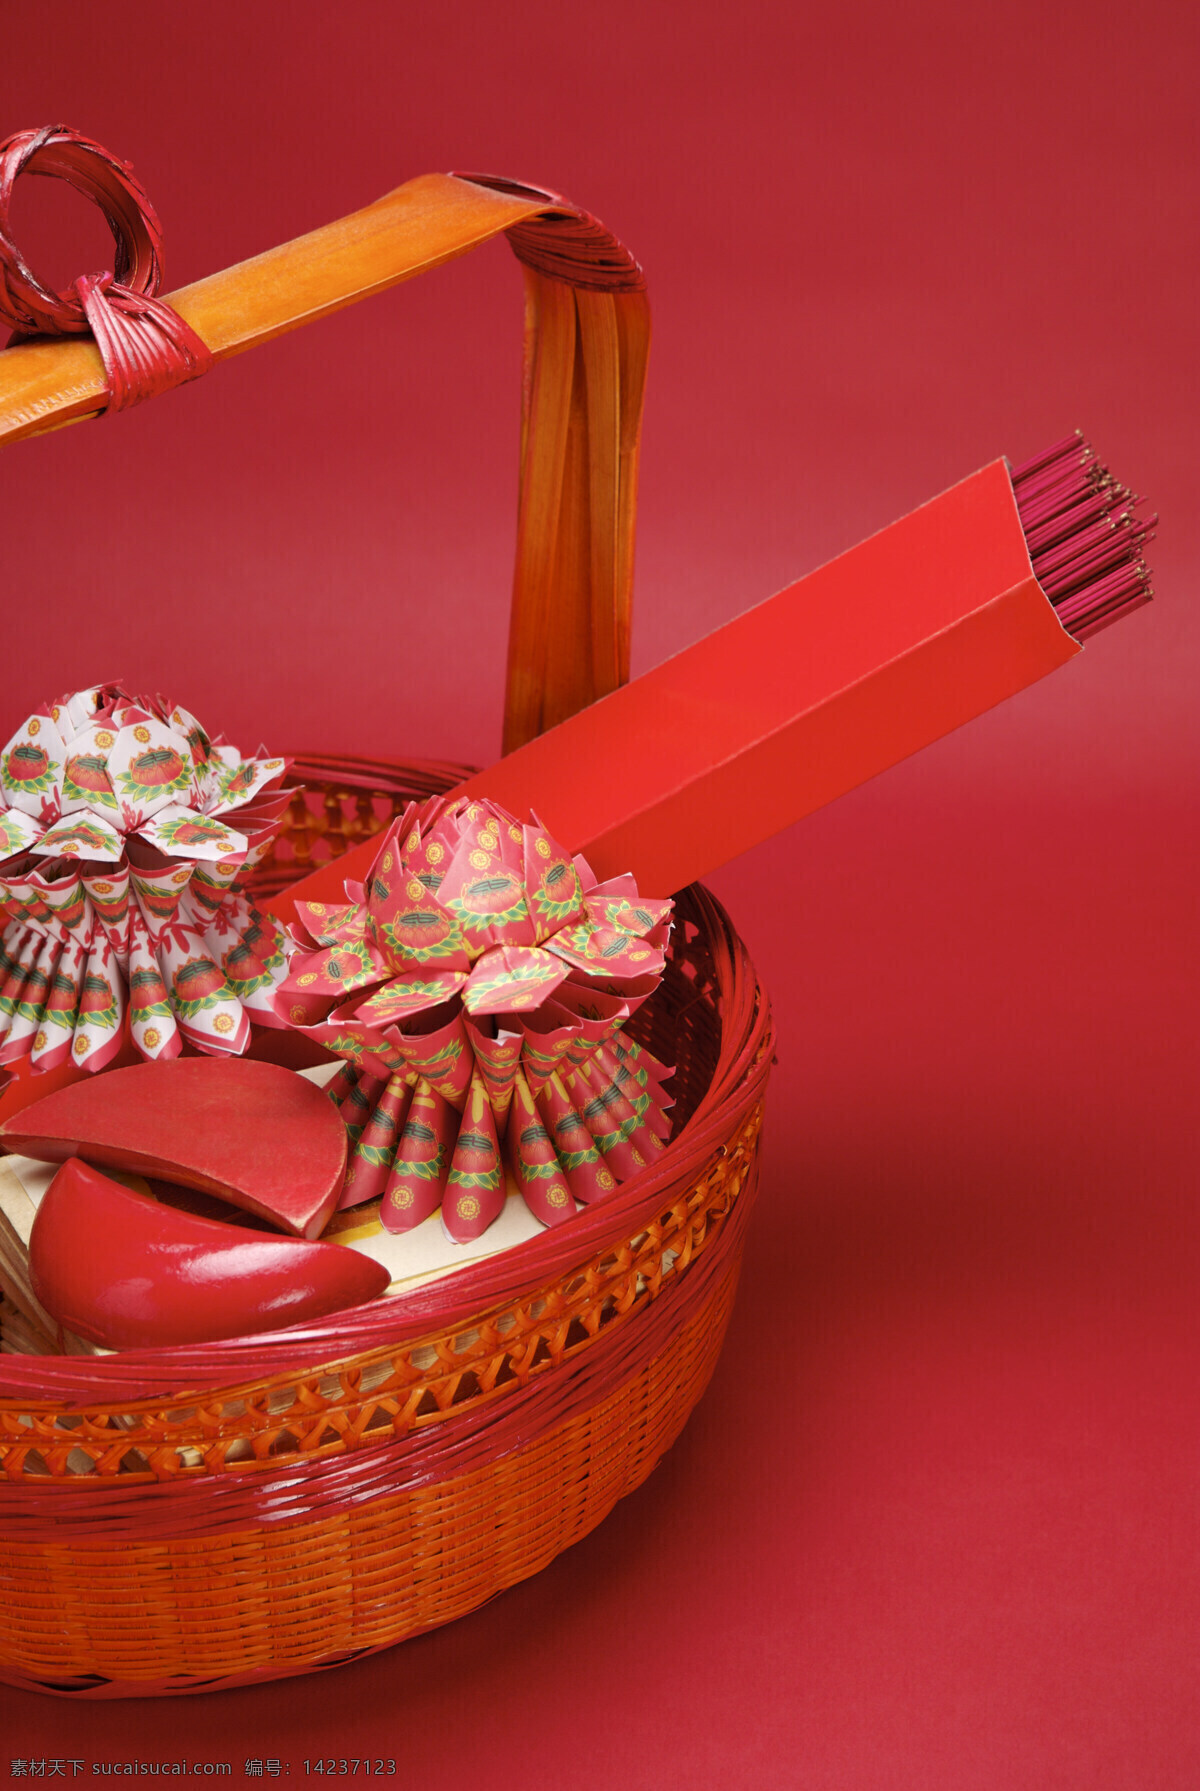 祭祀用品 清明节 祭祖 红色 金纸 香 博杯 传同习俗 宗教信仰 文化艺术